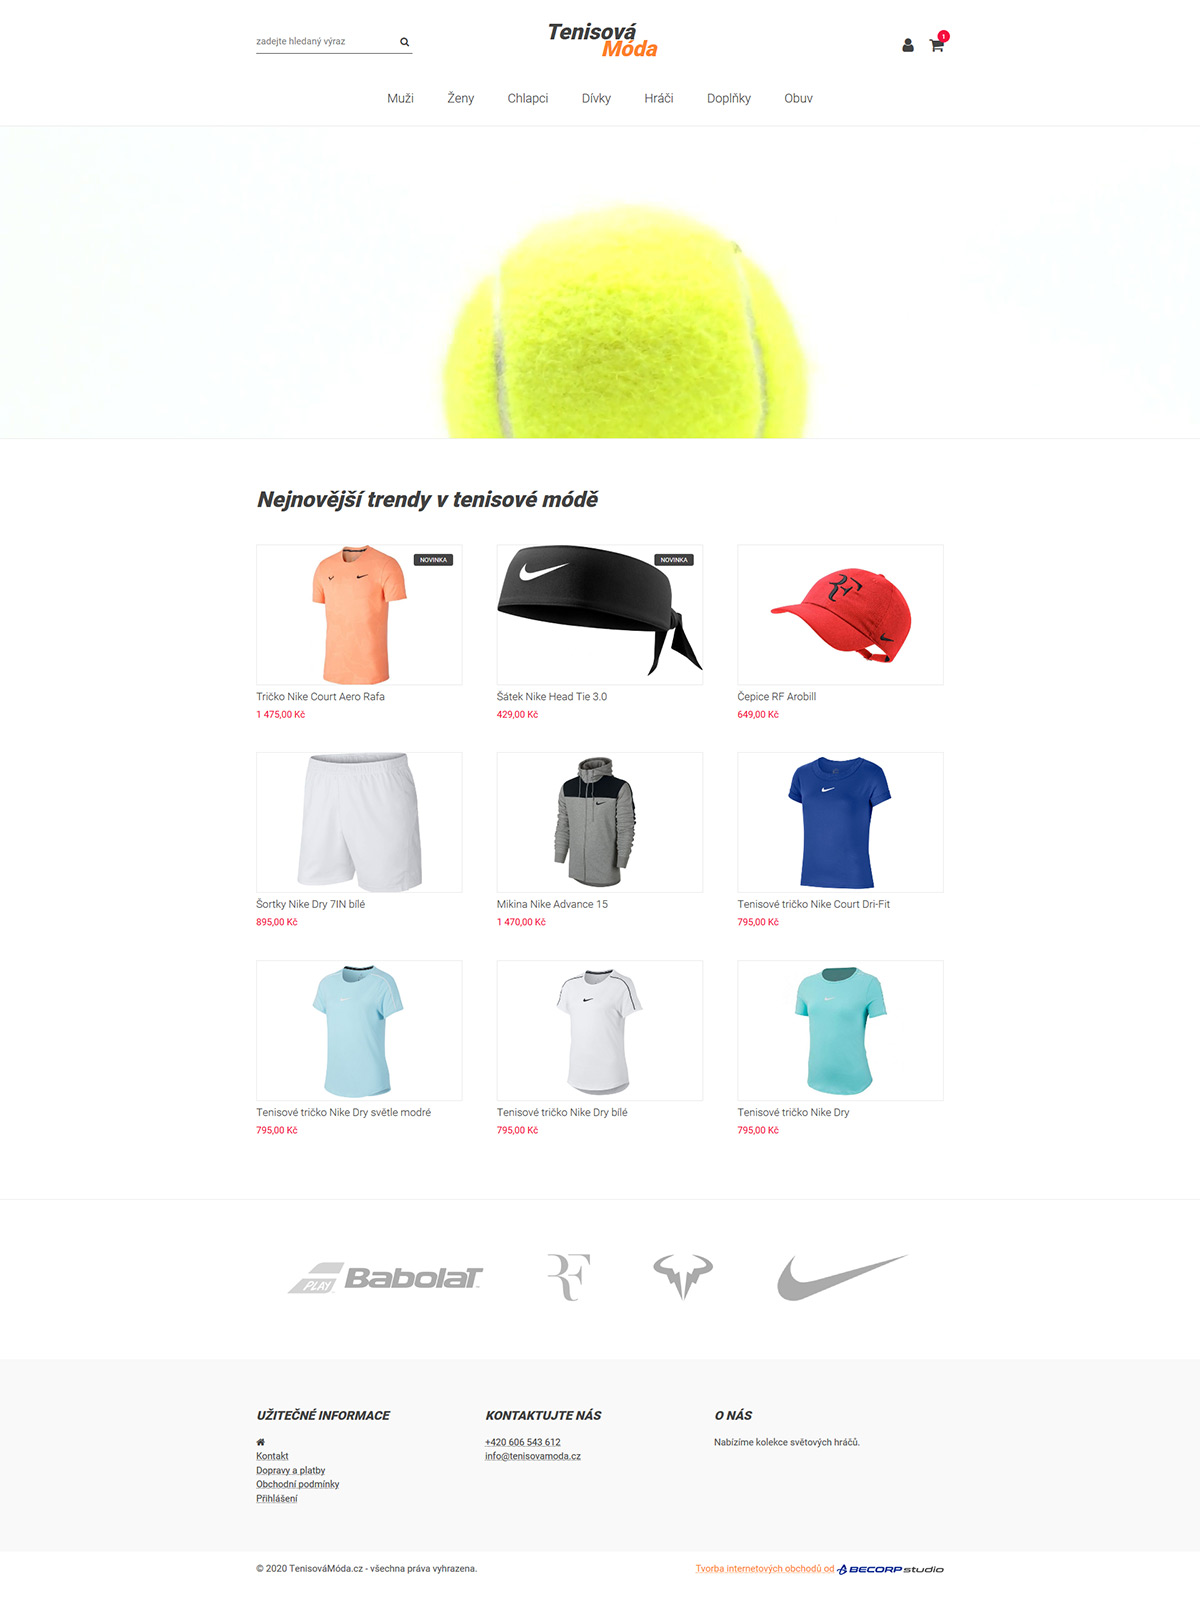 Jednoduchý internetový obchod s tenisovou módou